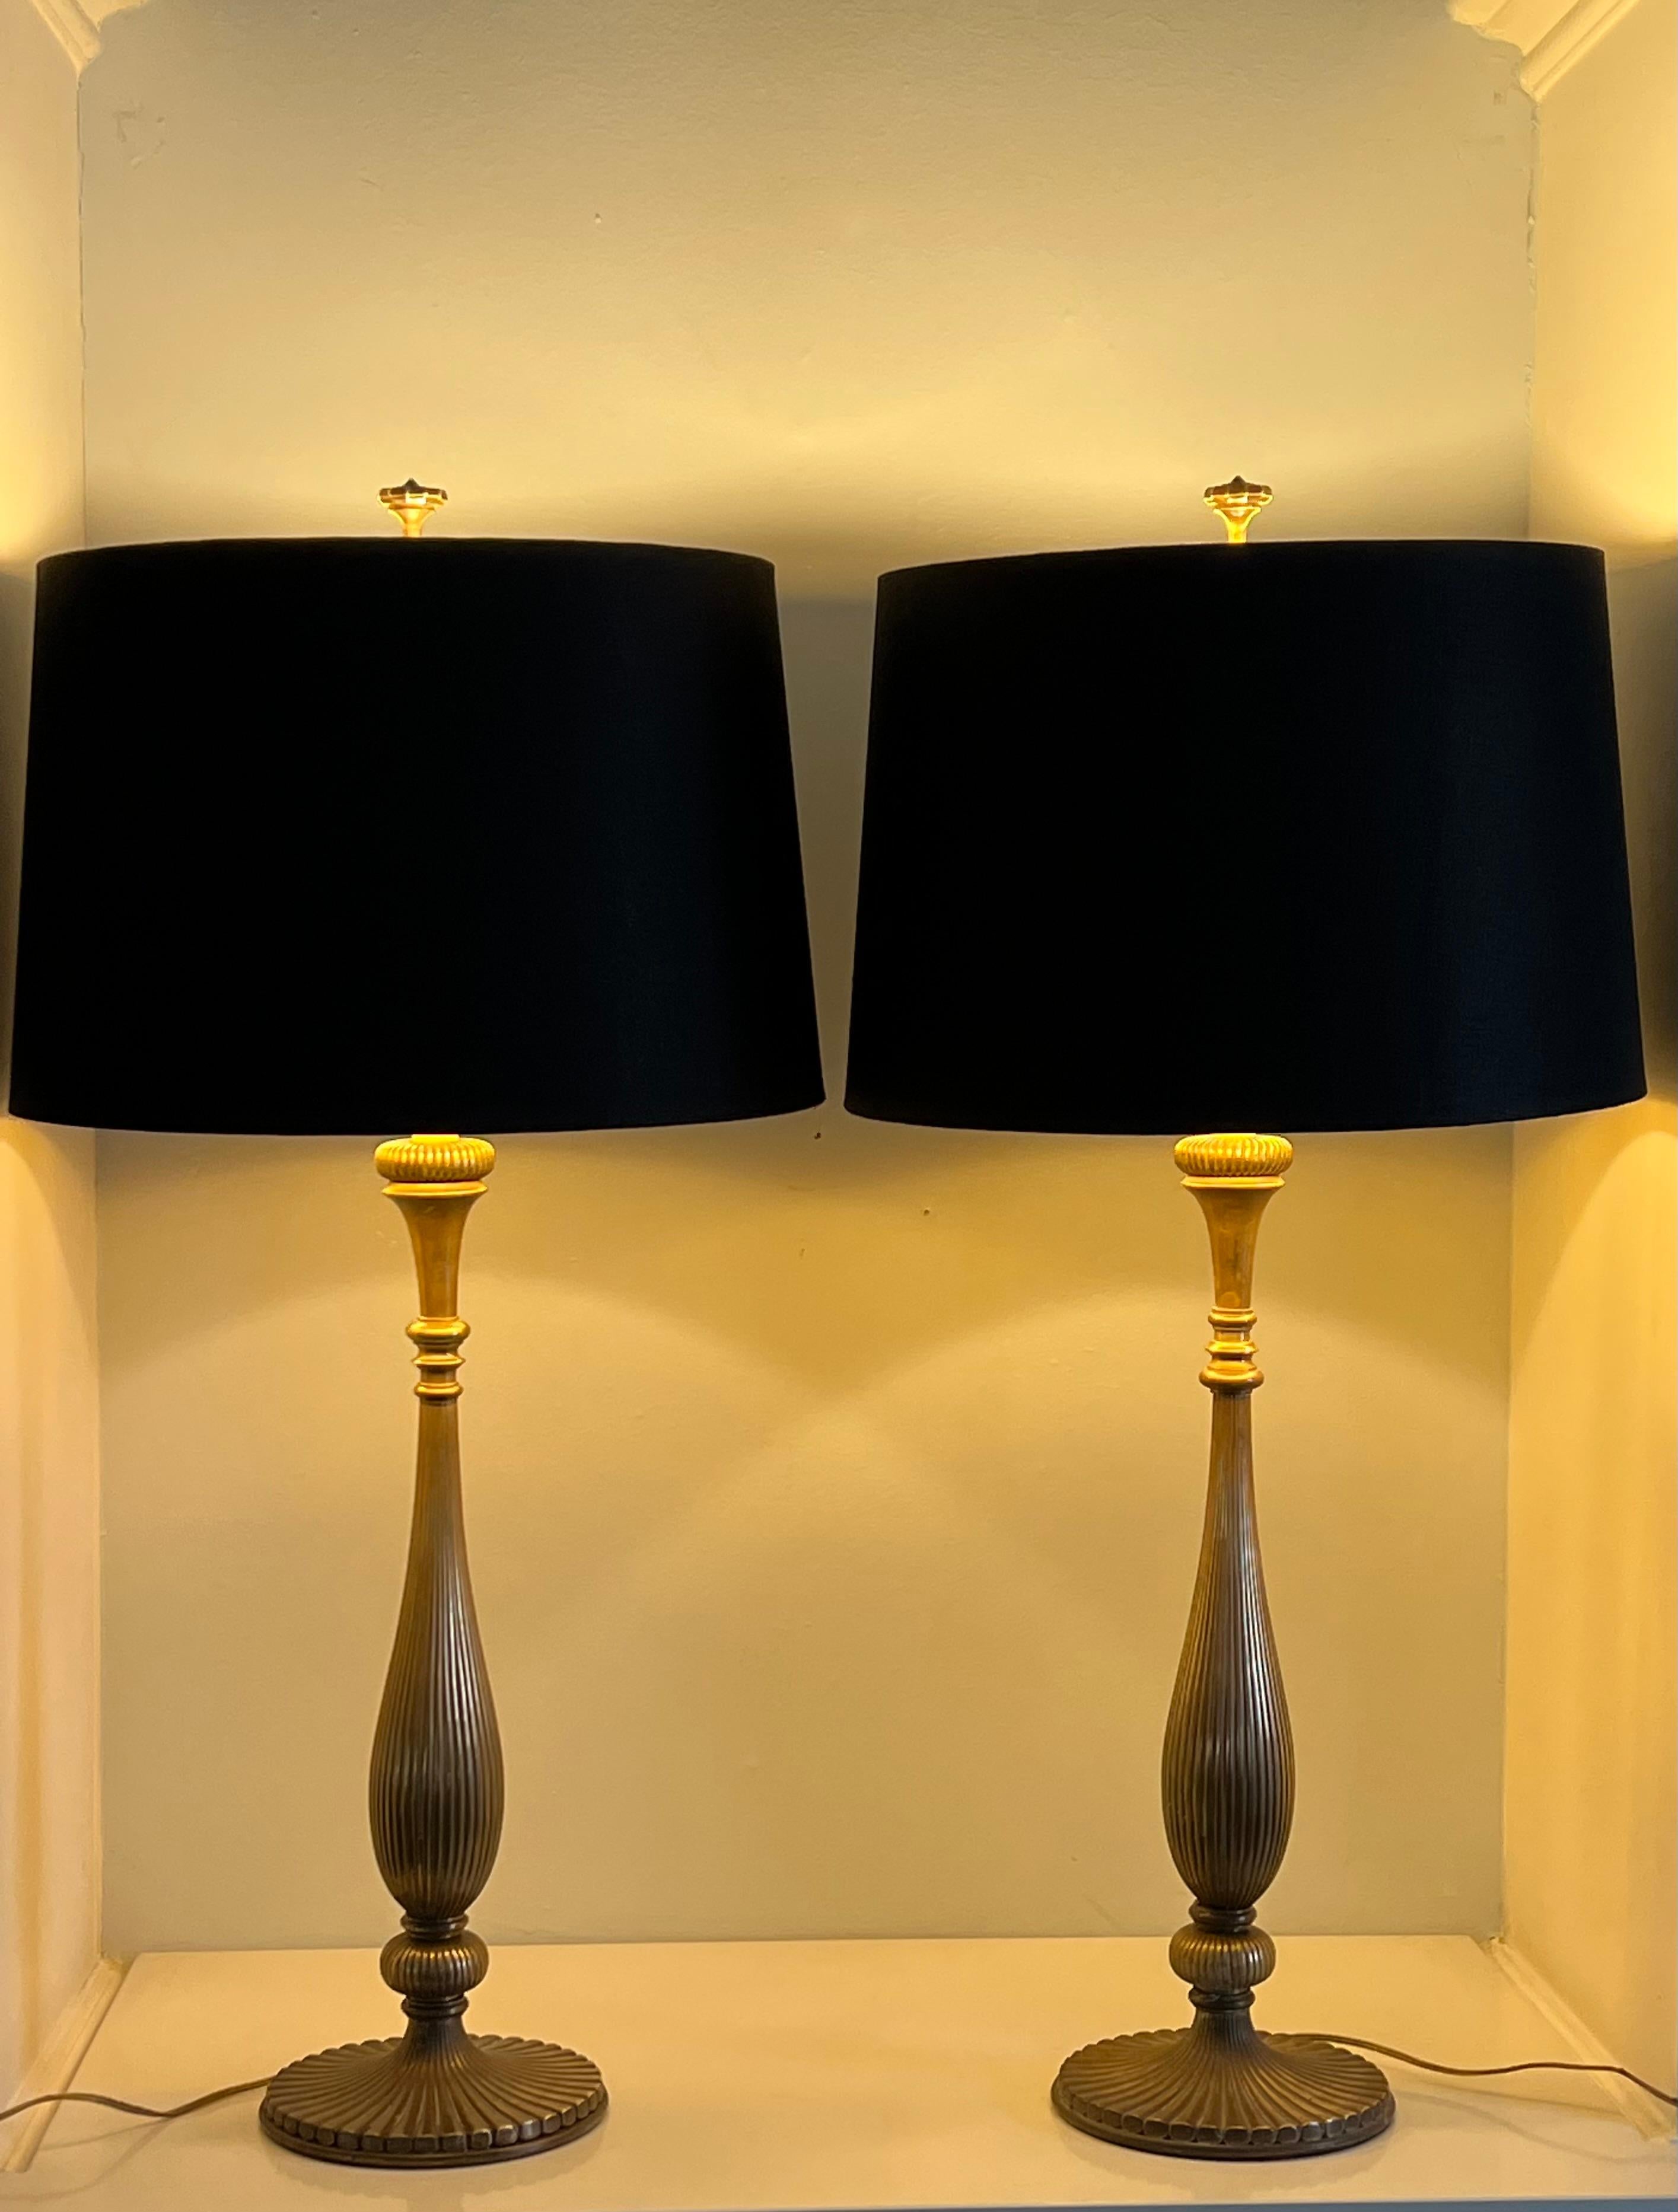 Ein wunderbares Paar Chapman-Lampen aus Messing. Ikonische Lampen aus der Mitte des Jahrhunderts mit einem gerippten Messingkörper im Stil eines Kerzenständers. Ziemlich beeindruckend und robust. Die Farbtöne sind mit einer Goldfolie unterlegt, die